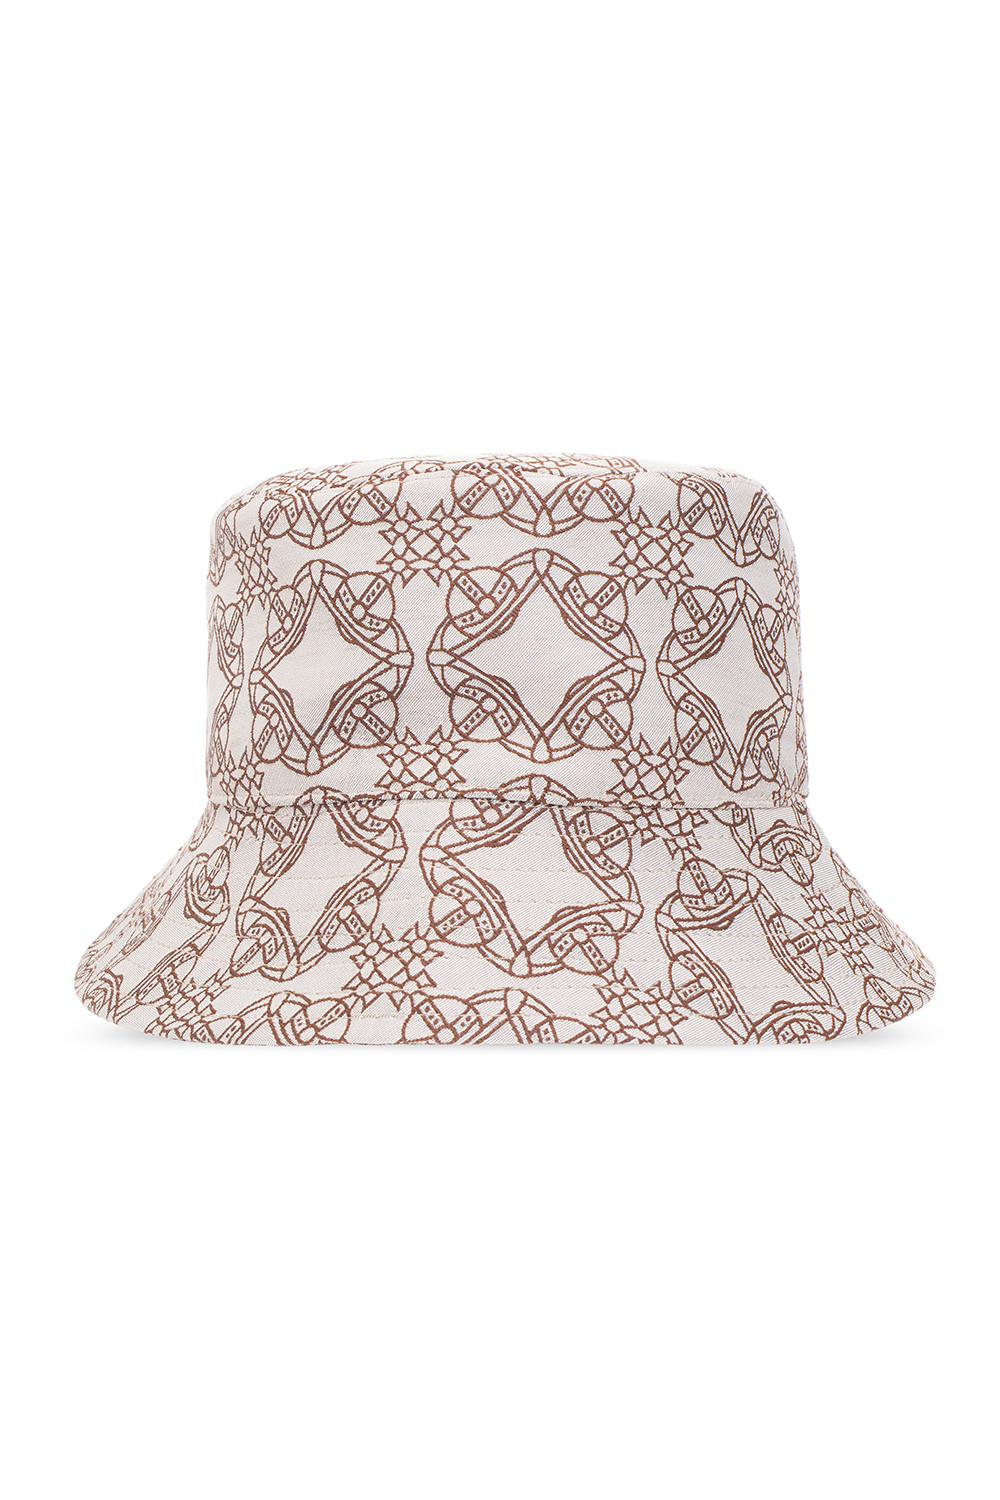 Grey Bucket hat with monogram Vivienne Westwood - Vitkac HK